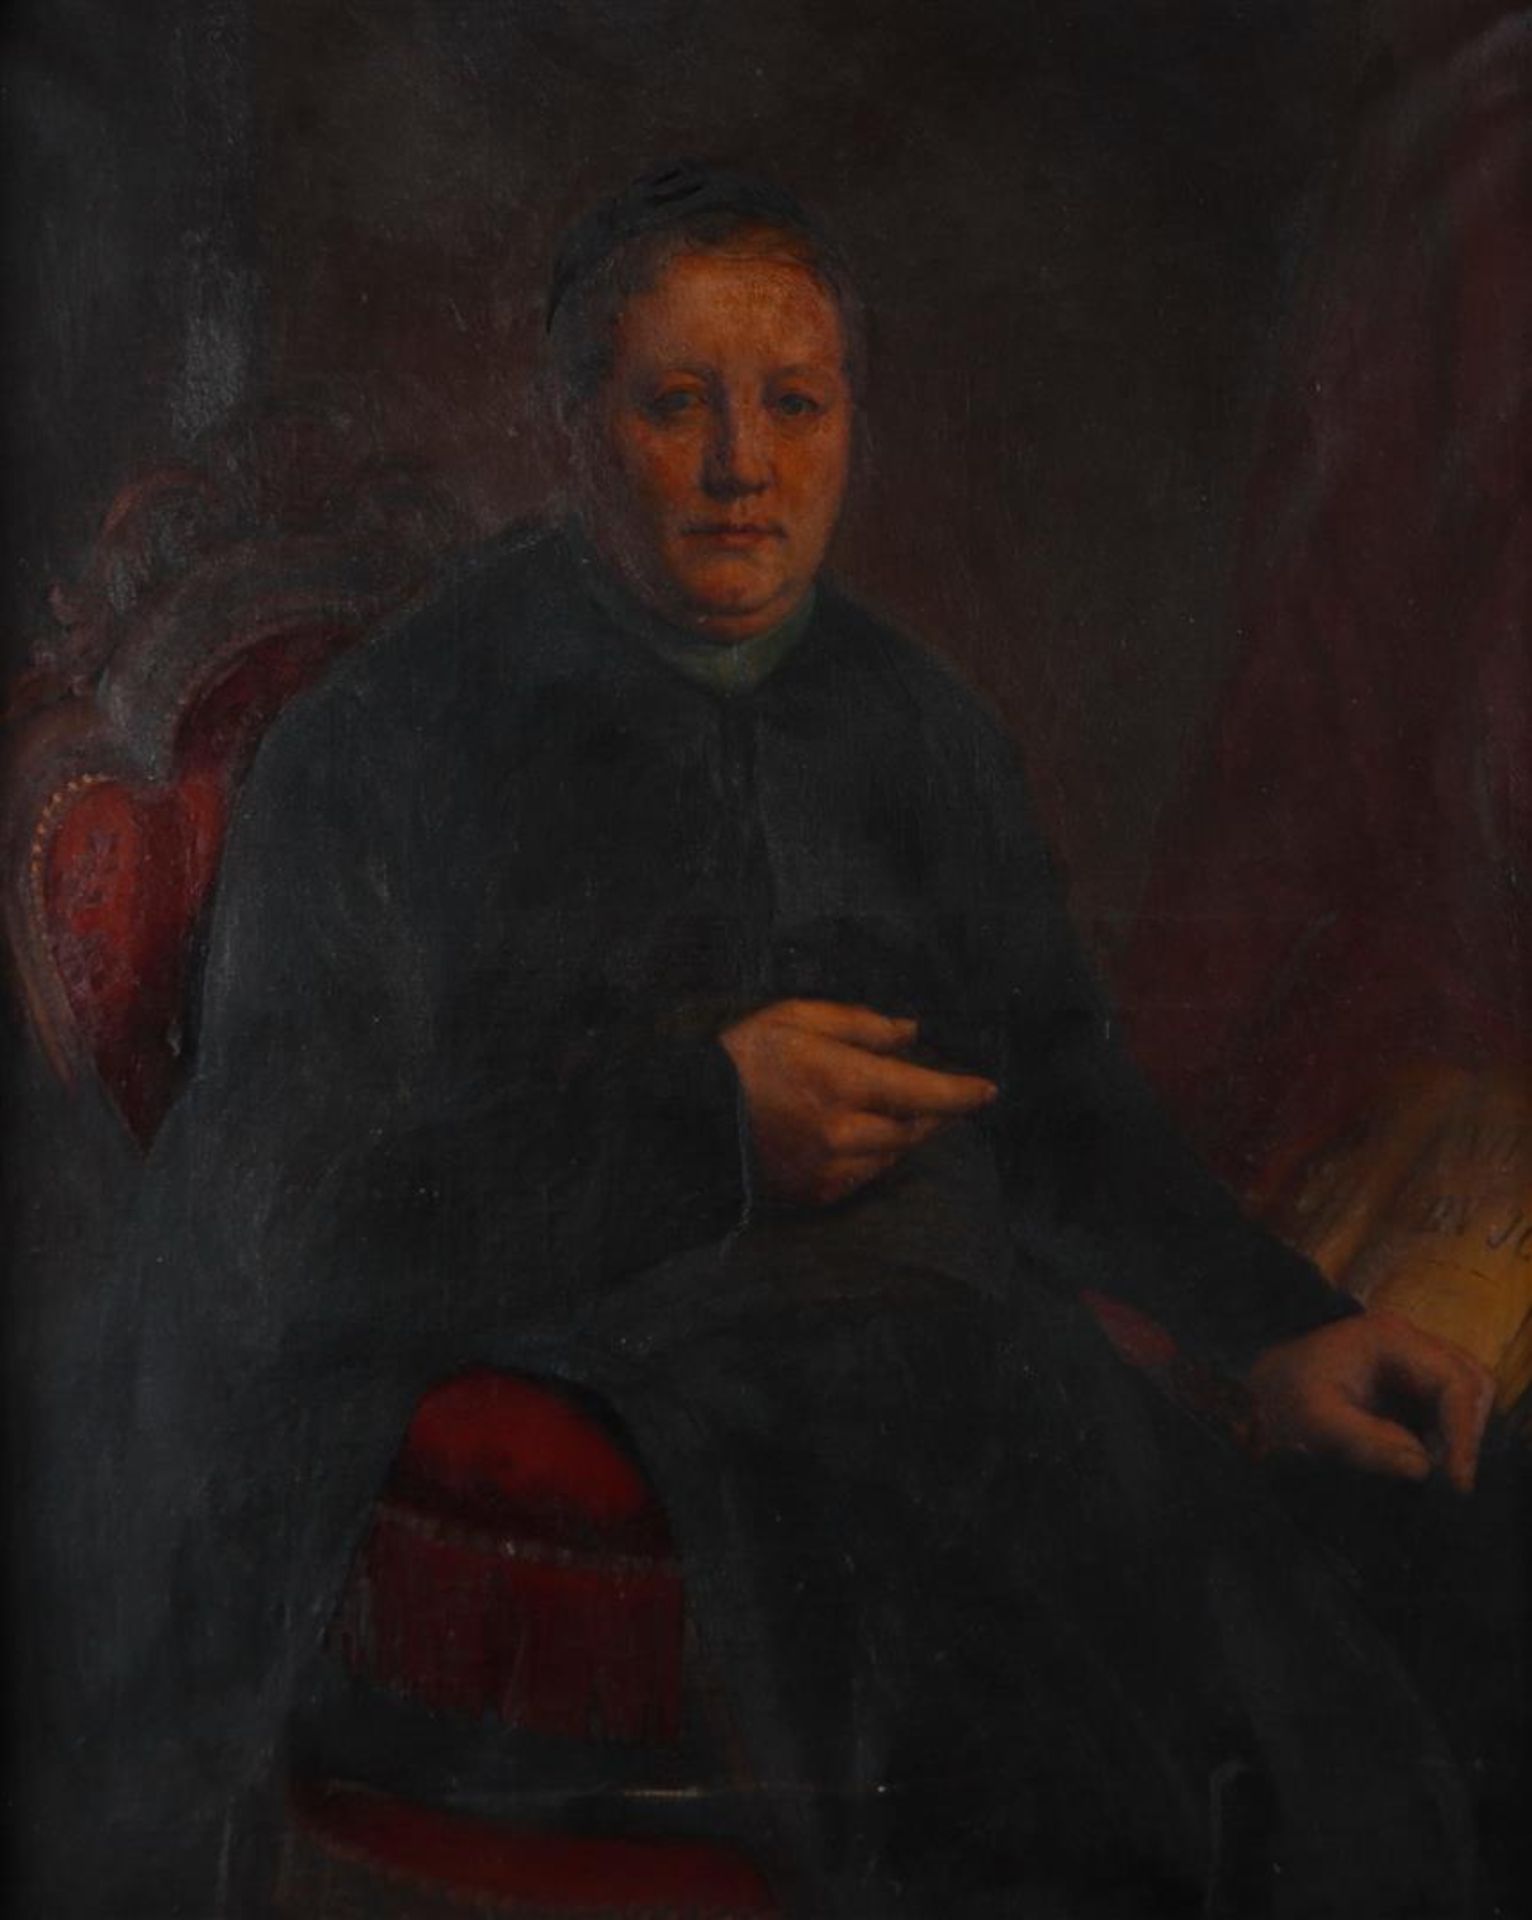 Pierre Jean van de Ouderaa (Antwerp 1841 - 1914), Portrait of a clergyman, oil on canvas.
